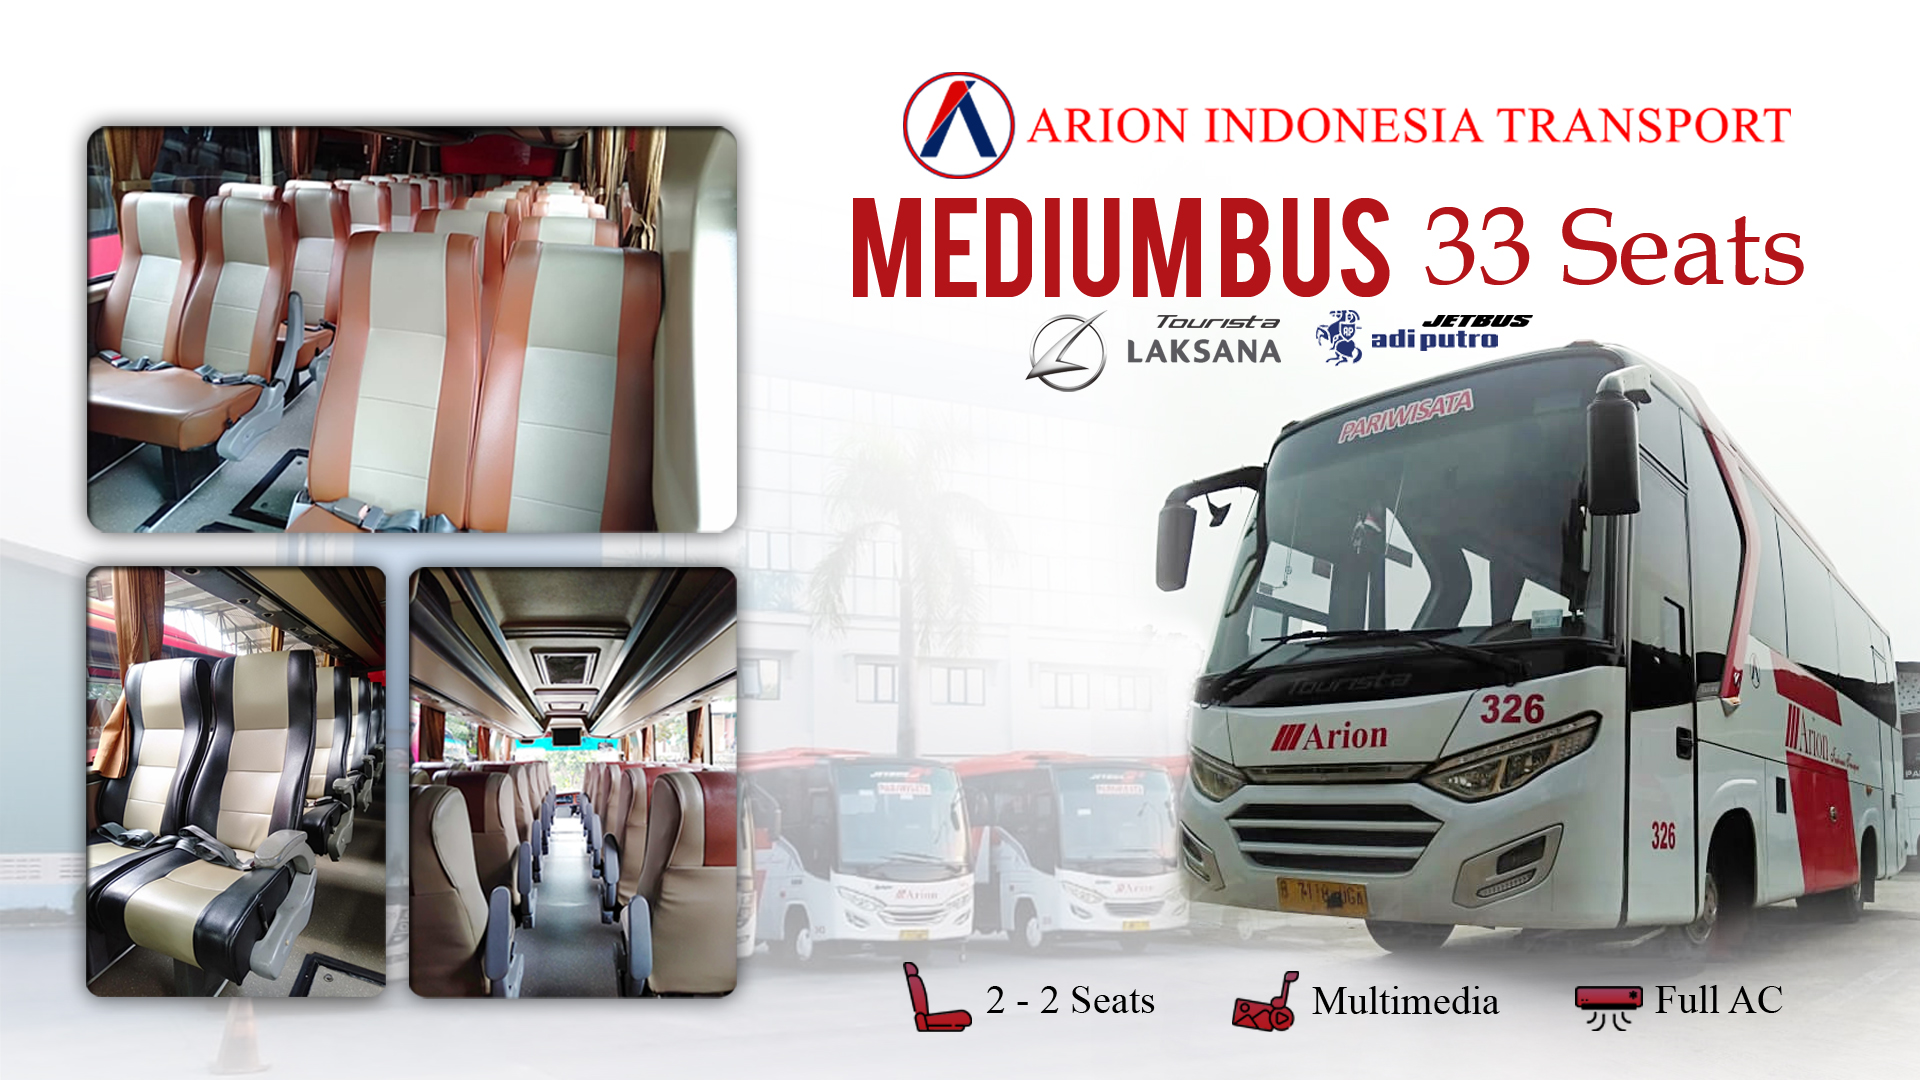 Medium Bus Wisata Arion